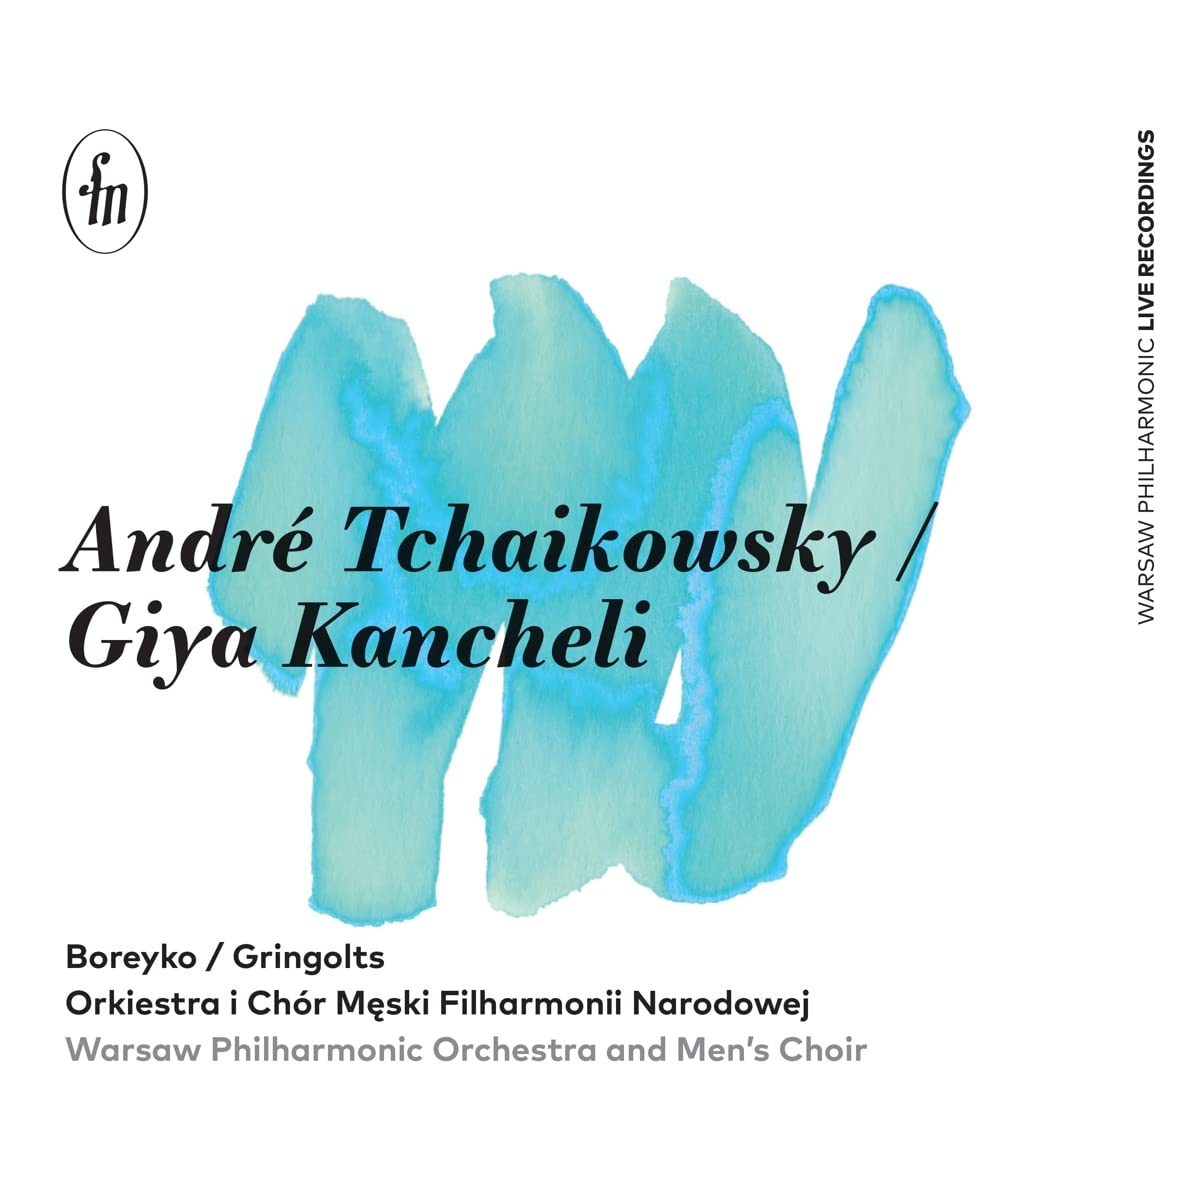 Audio Cd Boreyko/Gringolts/Warsaw Philharmonic Orchestra/+ - Concerto Classico / Libera Me NUOVO SIGILLATO, EDIZIONE DEL 21/05/2022 SUBITO DISPONIBILE